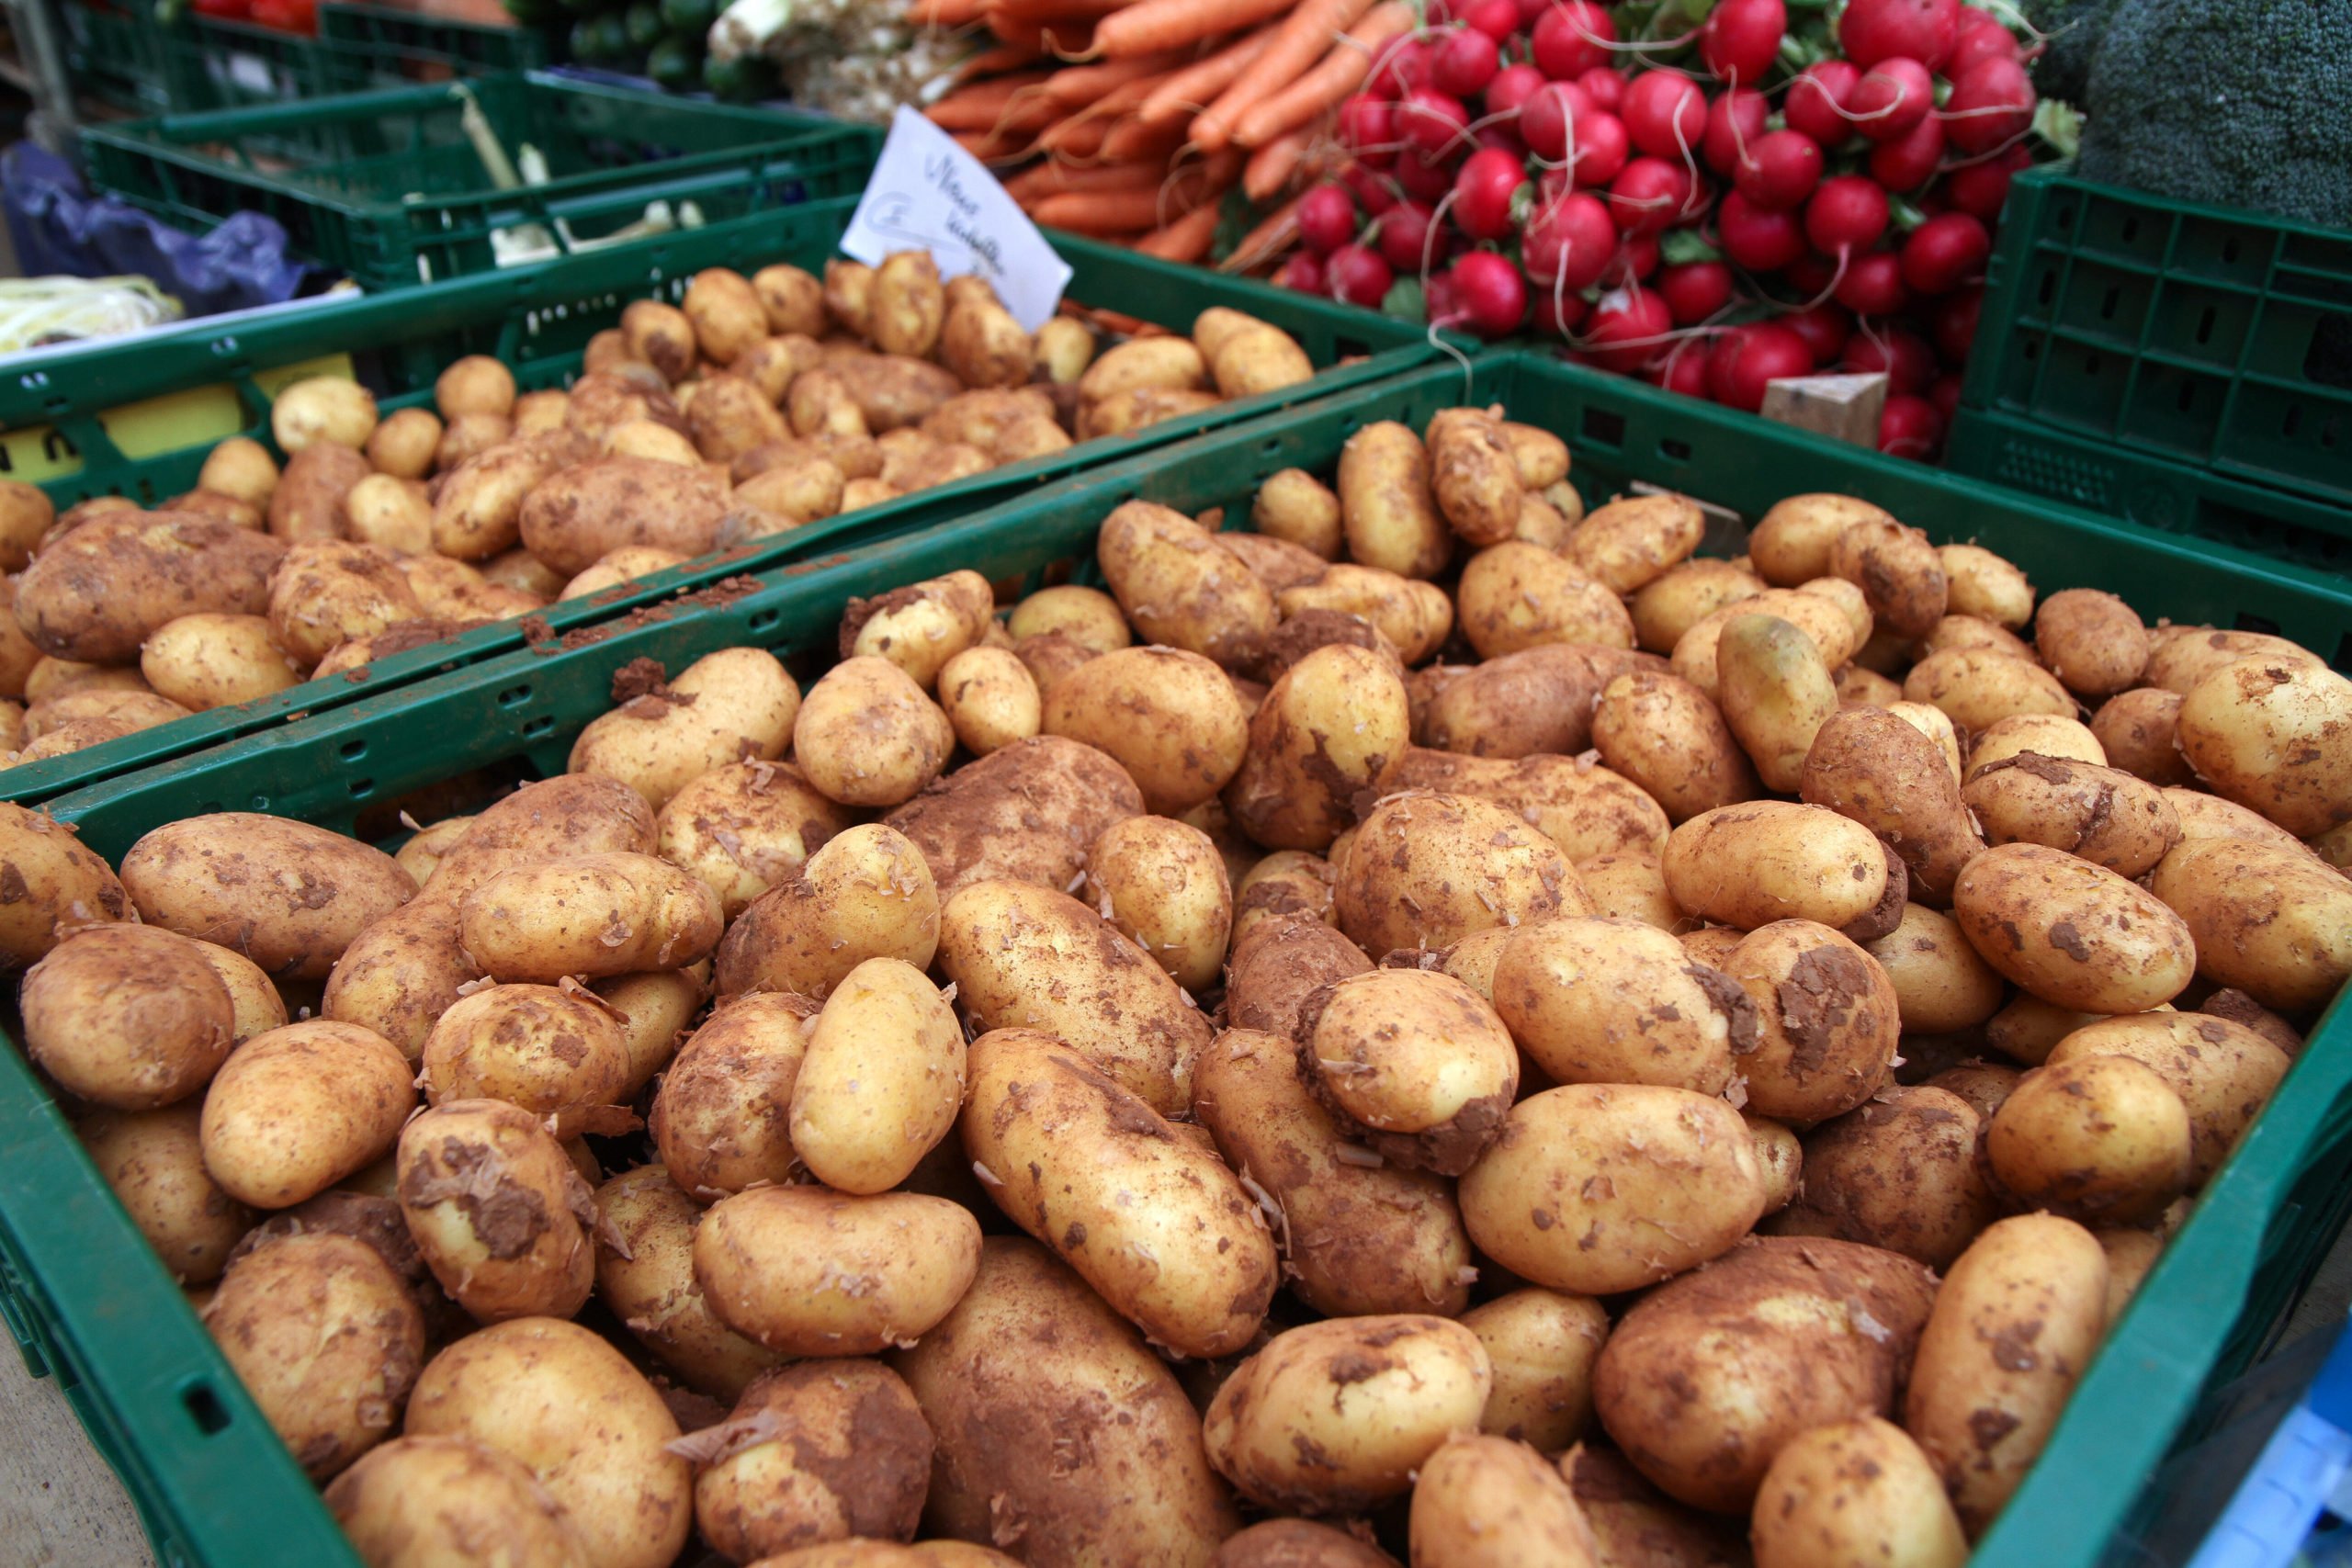 Wochenmärkte in Berlin "Die dicke Linda" wird der schöne Regionalmarkt am Neuköllner Kranoldplatz auch genannt. Der Name stammt von einer beliebten Kartoffelsorte, die hier verkauft wird.